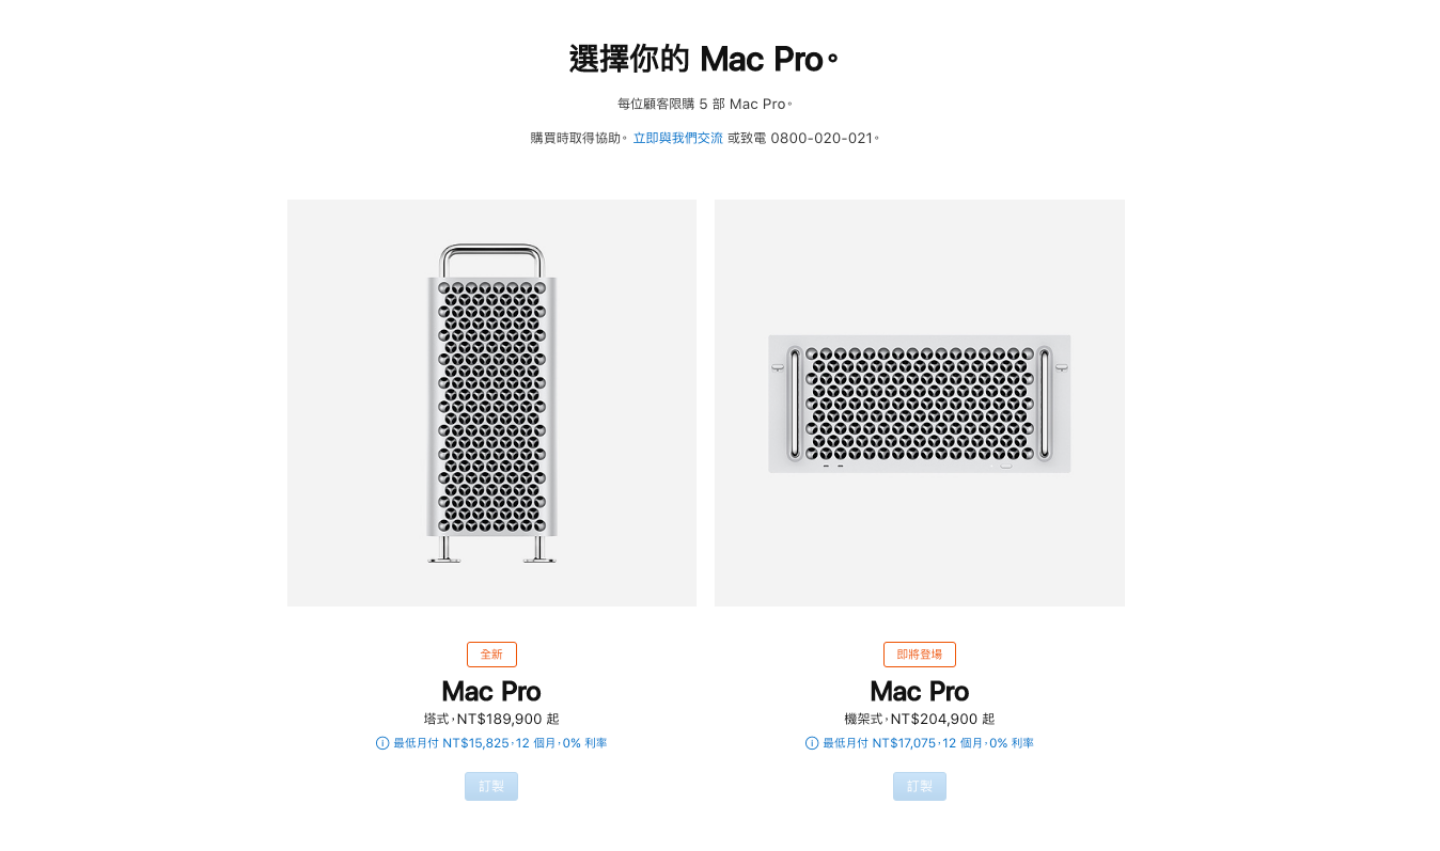 蘋果 Mac Pro 主機和 Pro Display XDR 顯示器要來了！頂規要價台幣 160 萬，都可買一台車了吶！